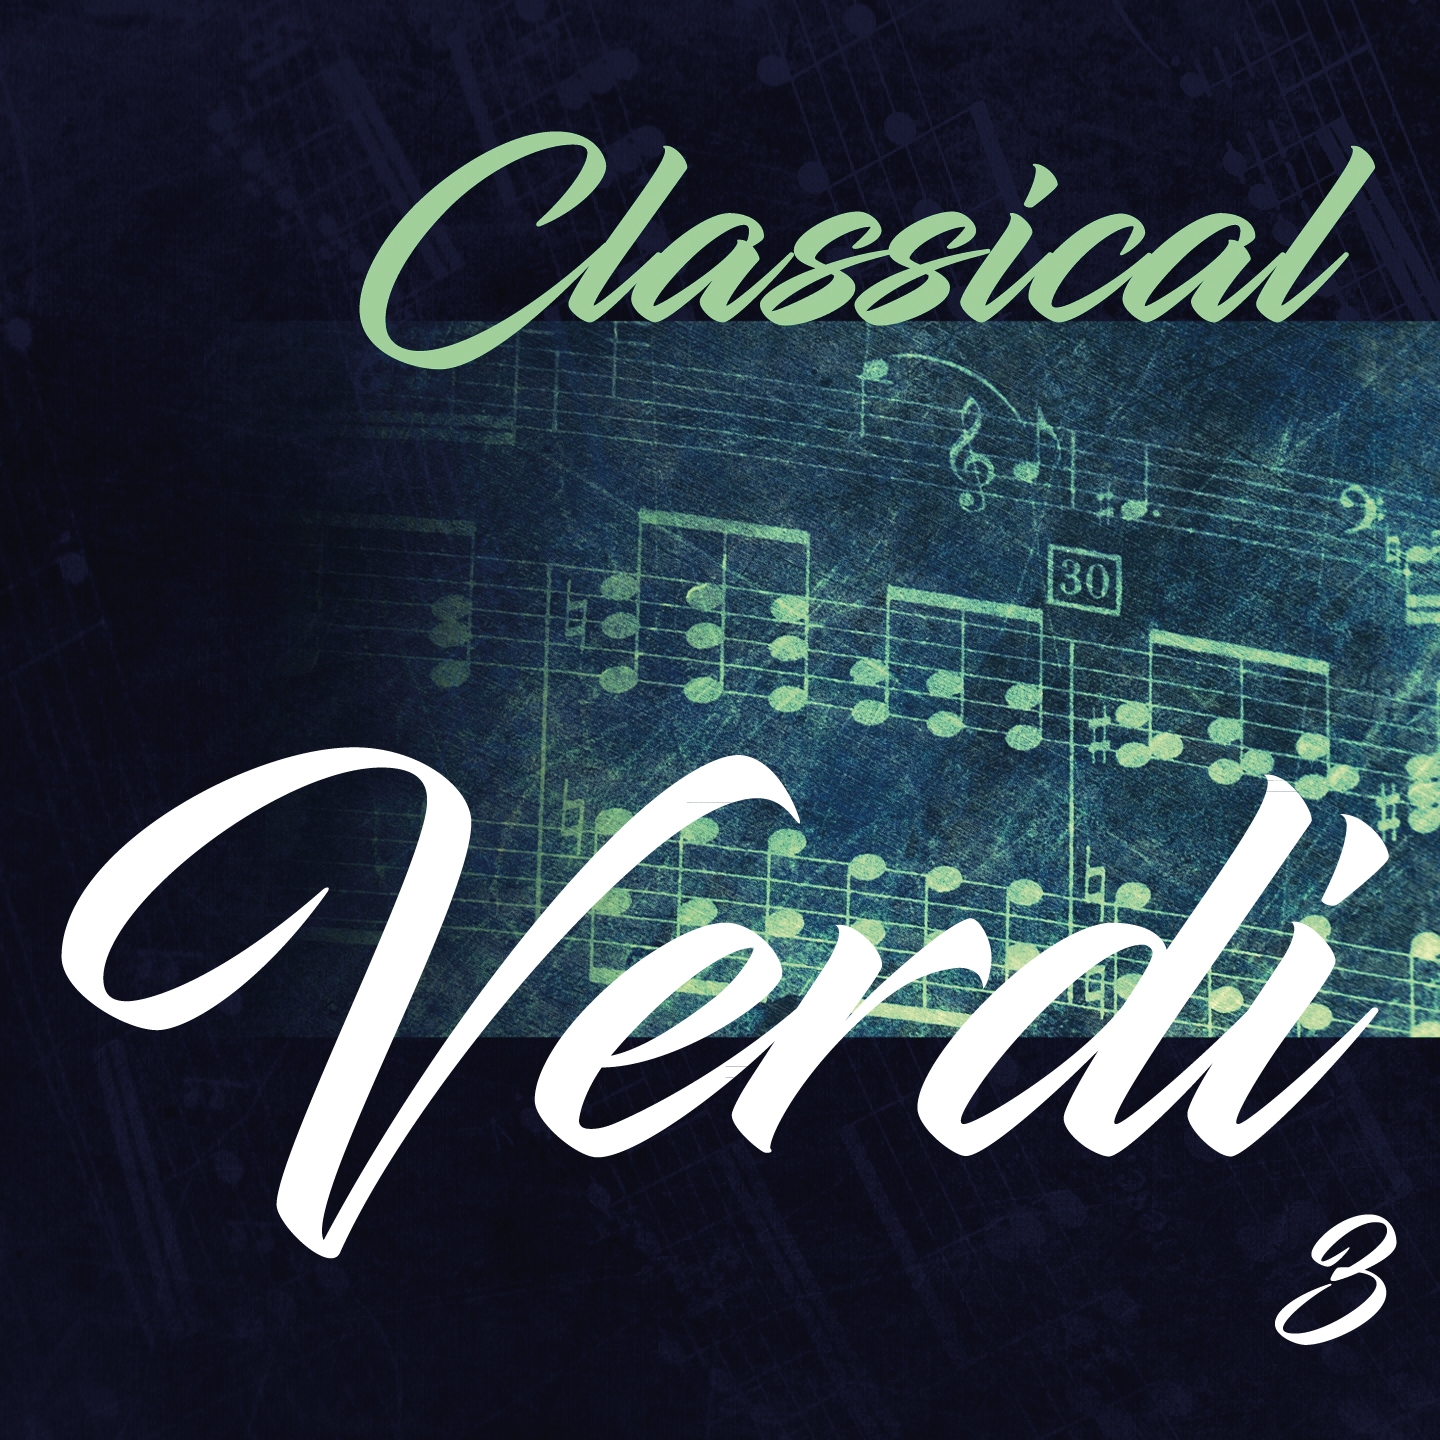 Classical Verdi 3